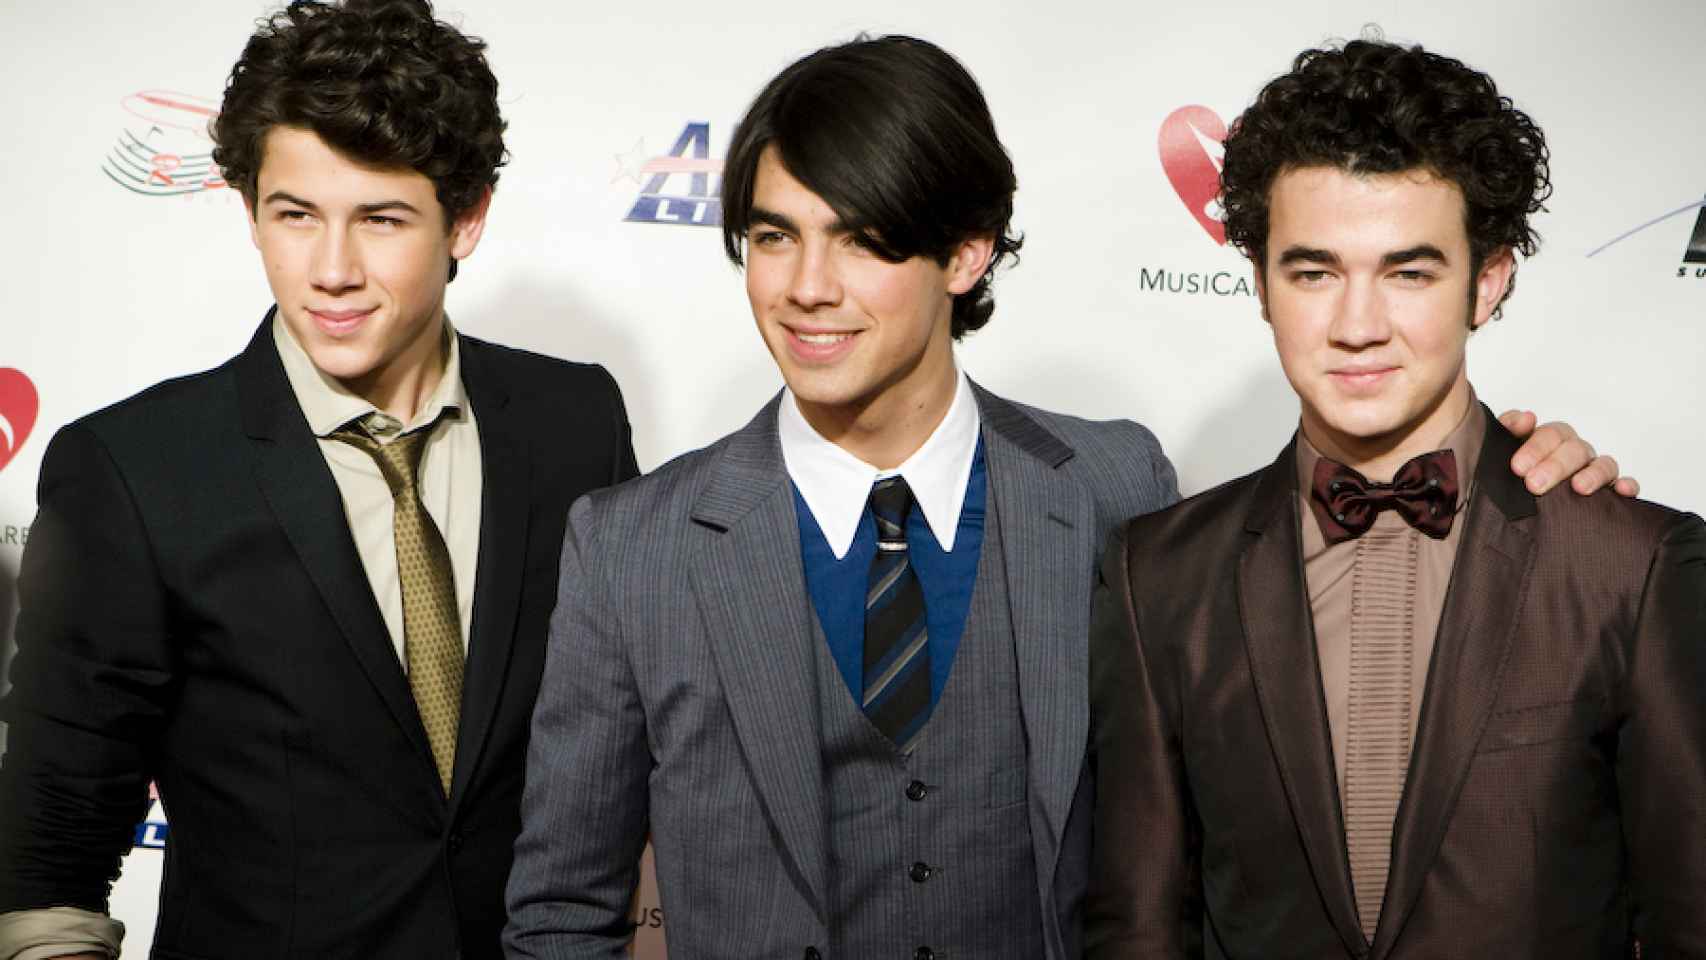 Los Jonas Brothers se disolvieron después de cuatro discos de estudios